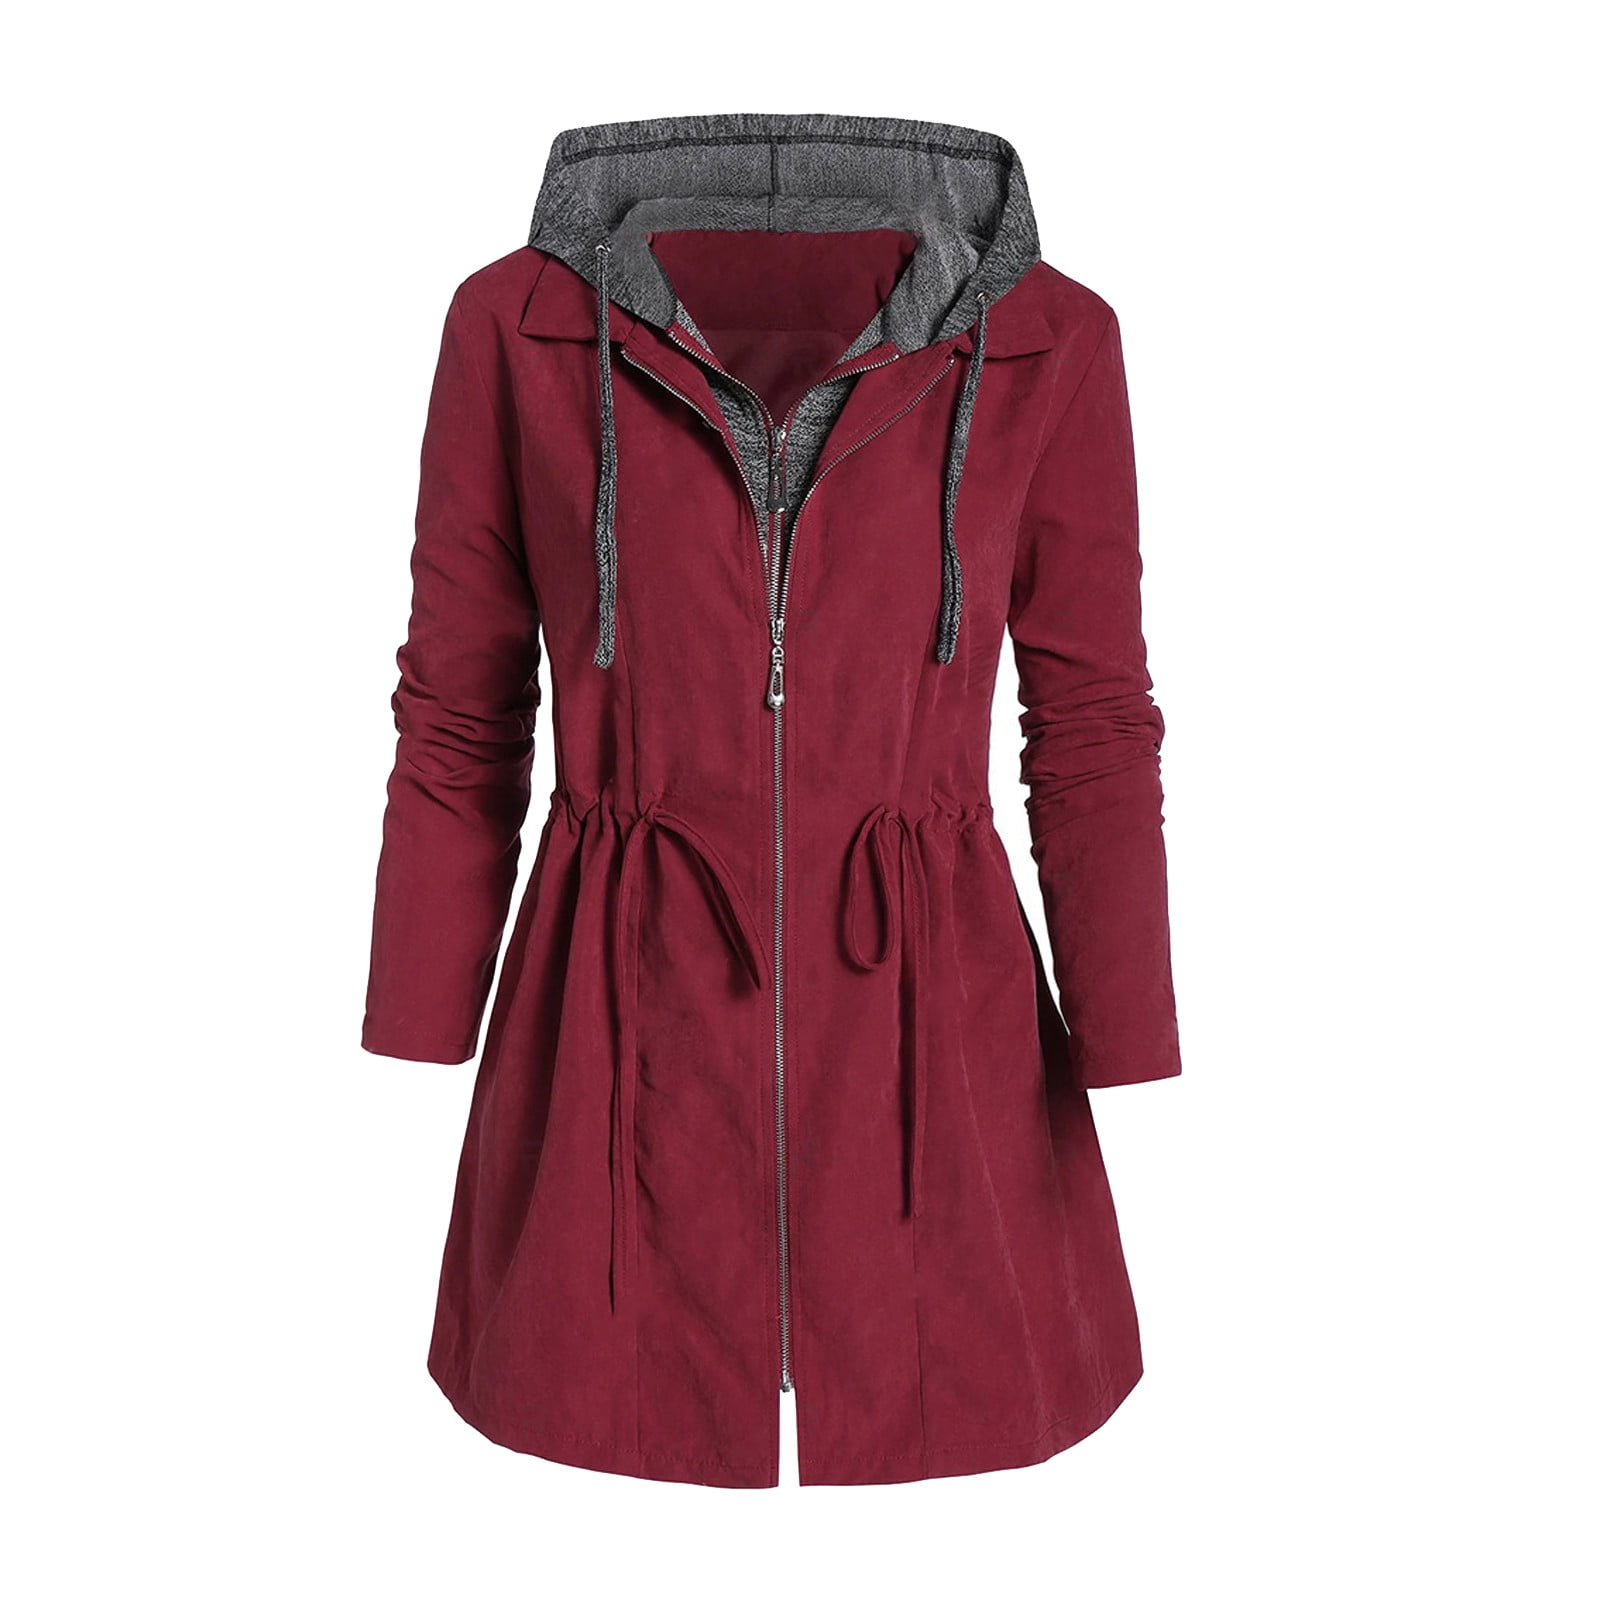 ZMHEGW Fashion Women Coat Patchwork Winter Hooded Plus Size Coat Zipper ...